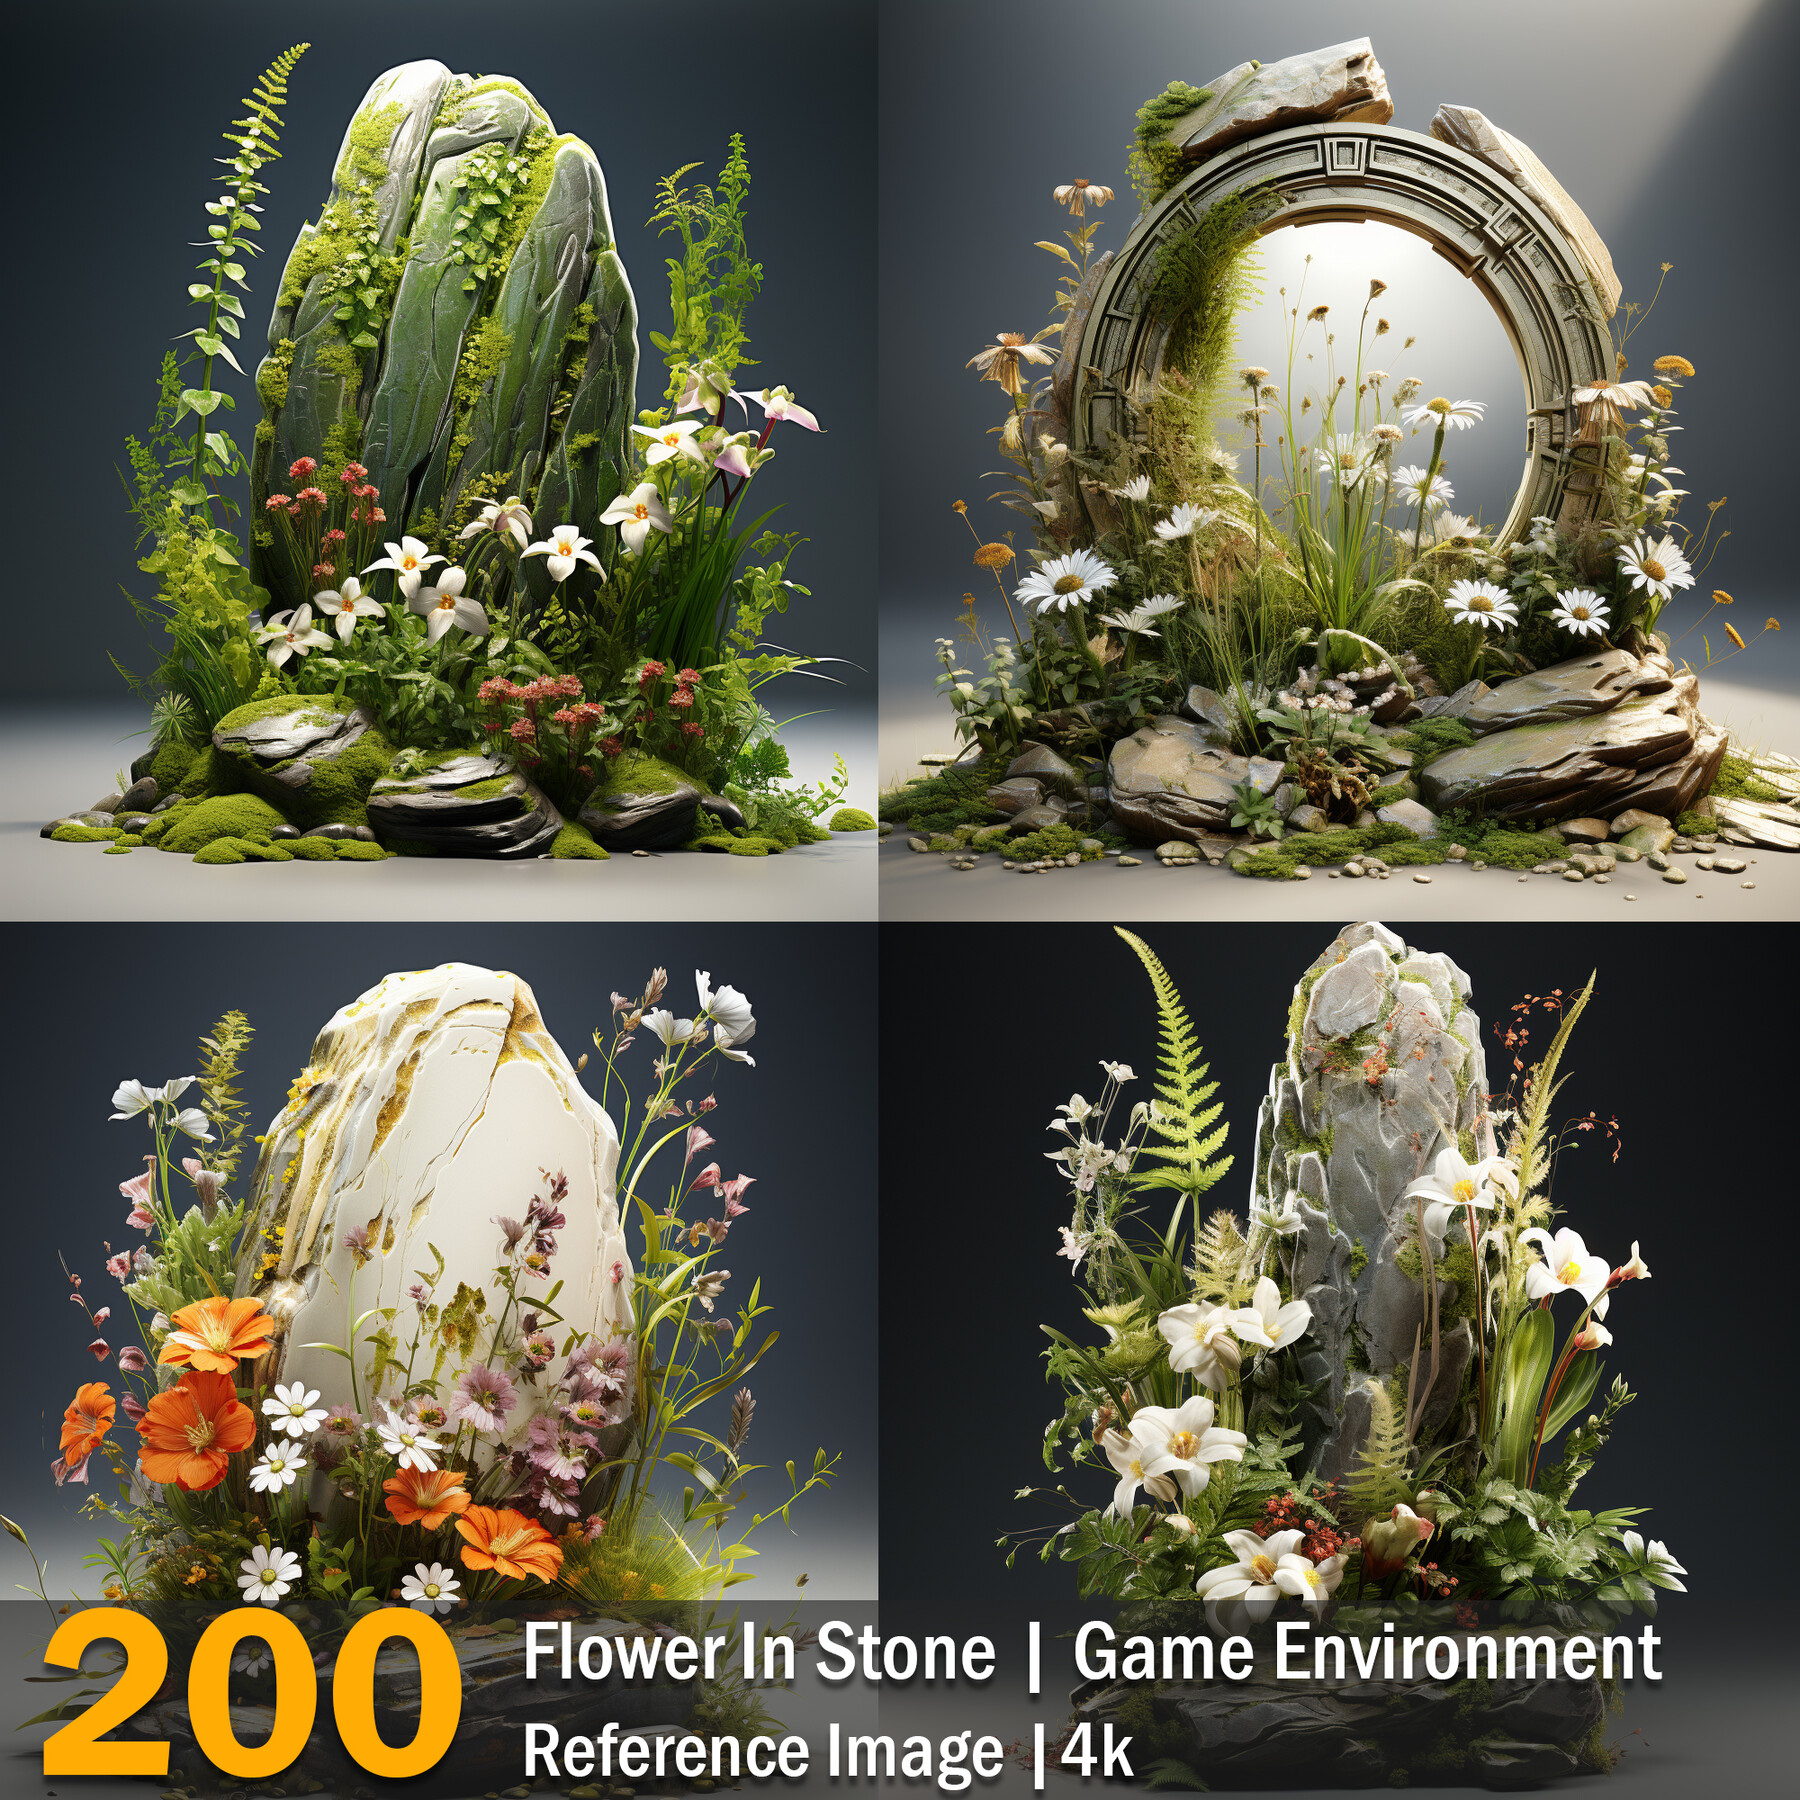 830 FLORAL FANTASIA ideas  flower arrangements, floral